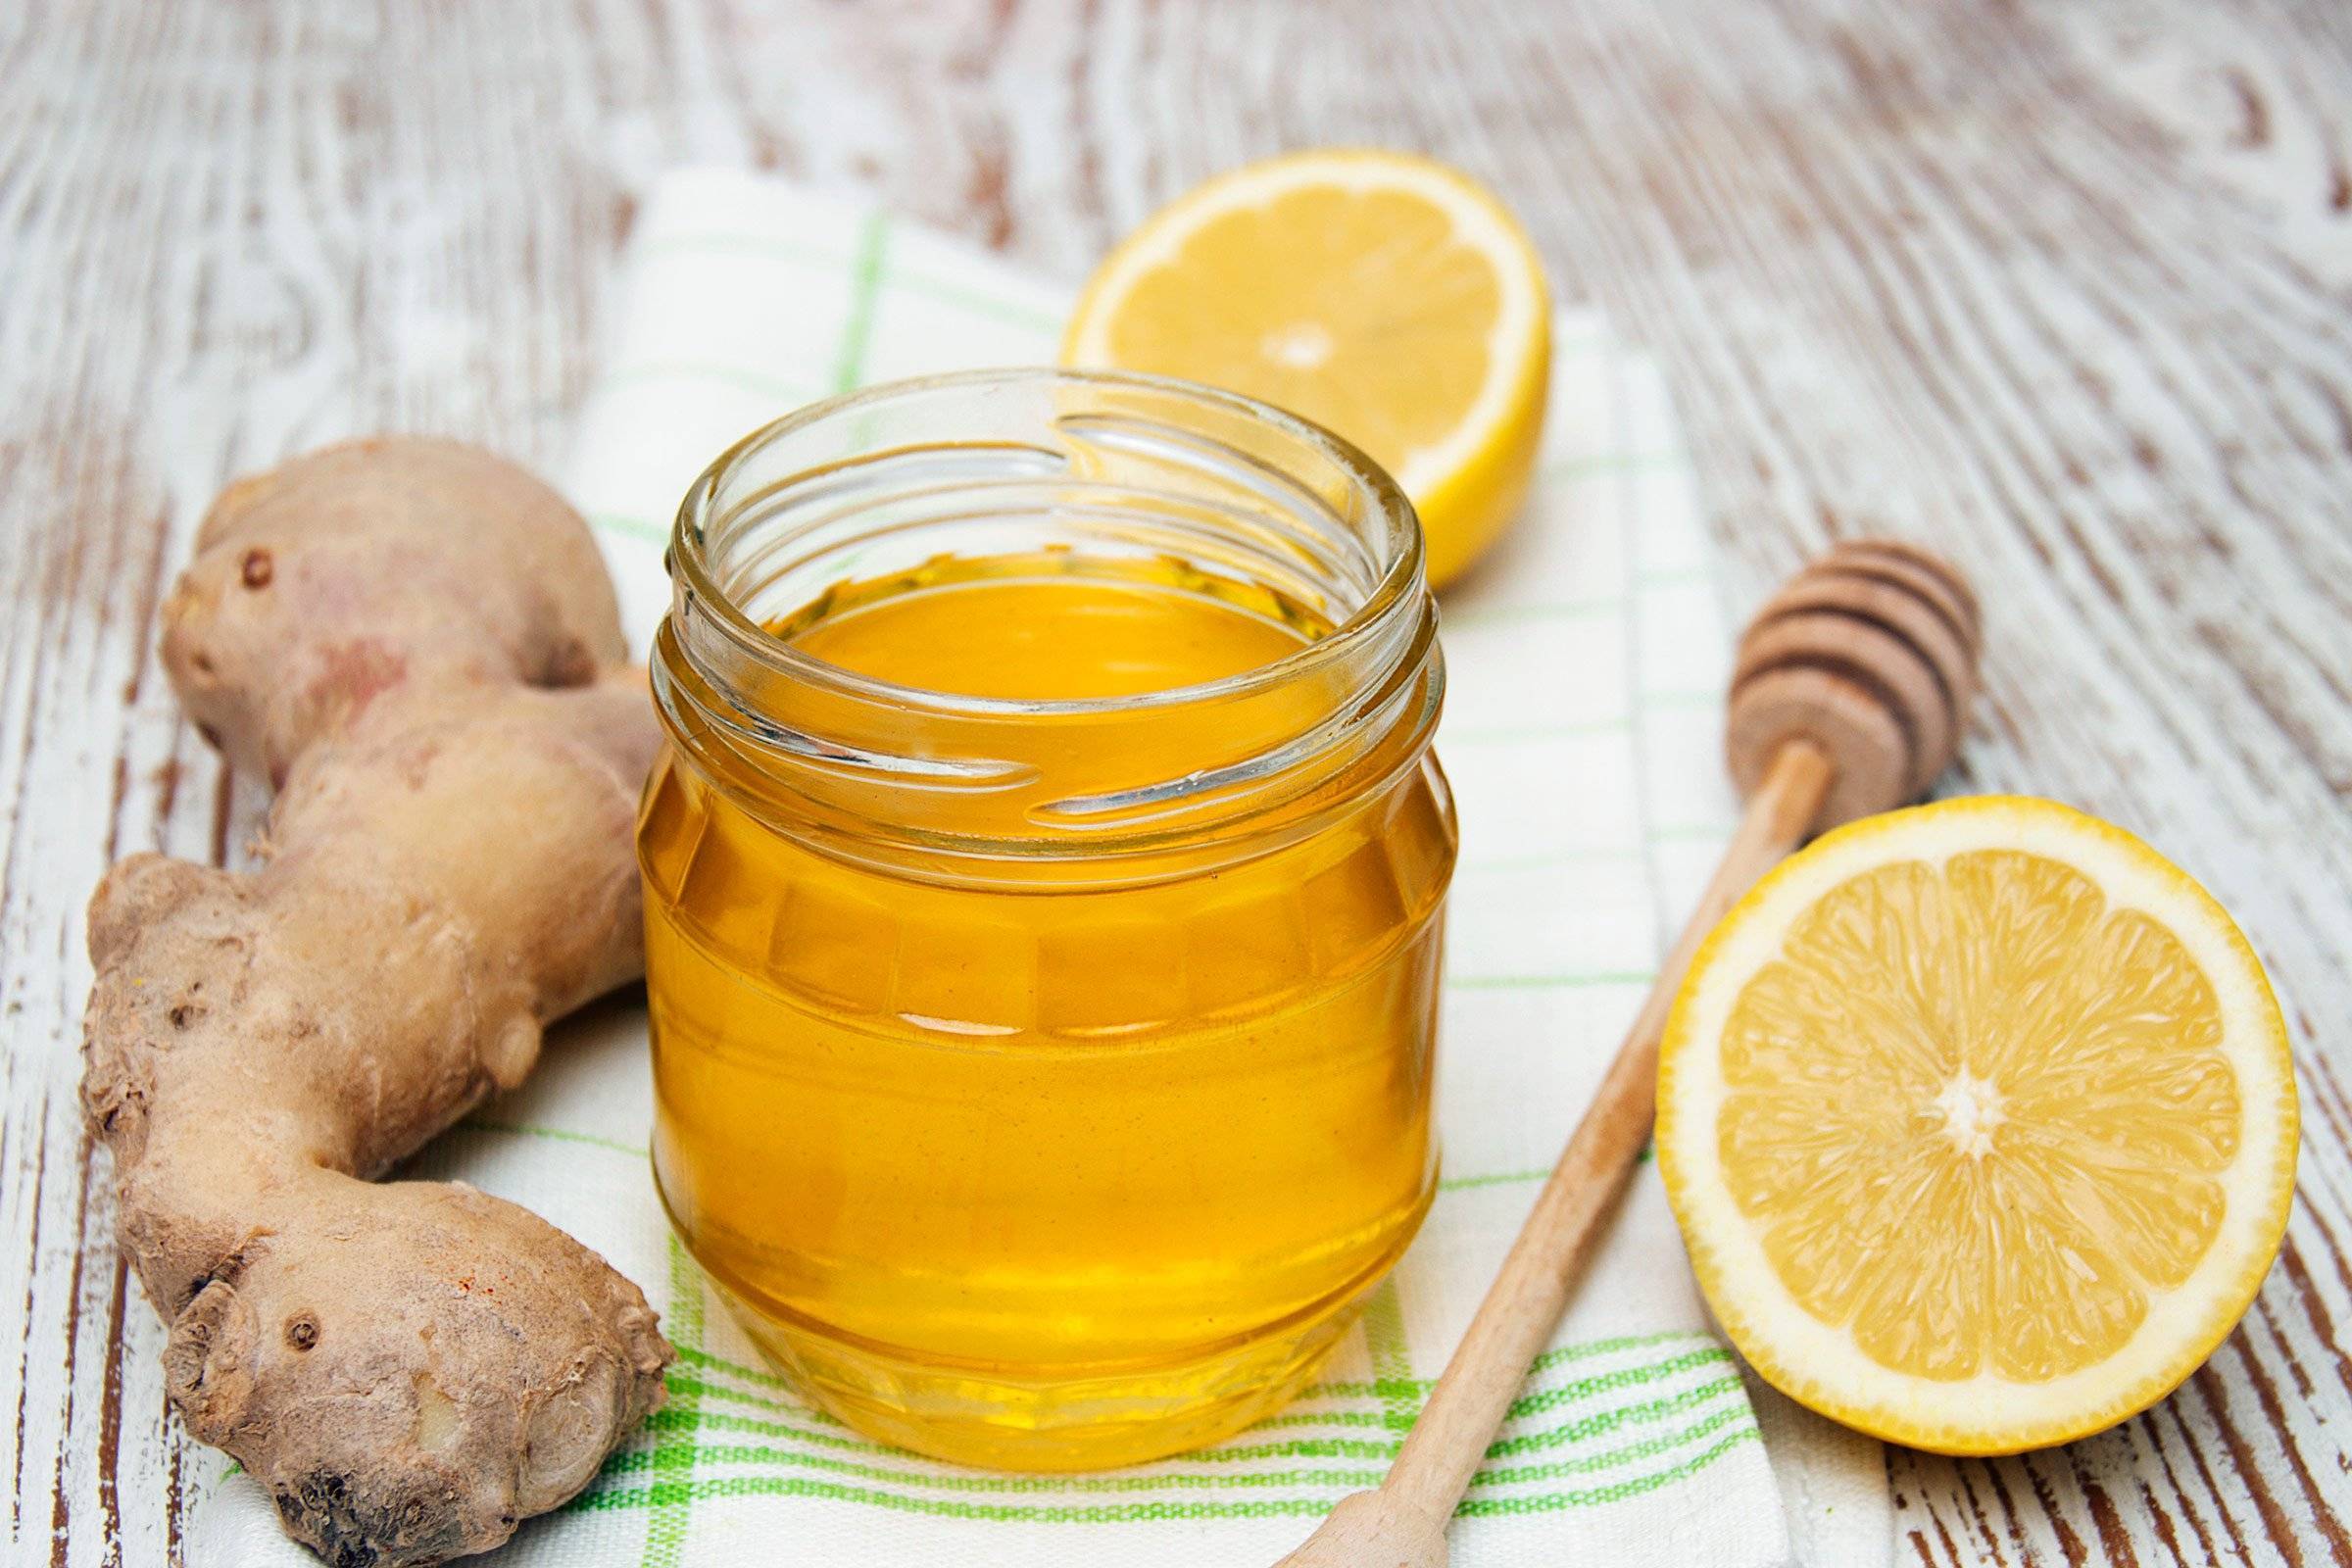 Имбирь, корица, мед, лимон: компоненты для полезного напитка